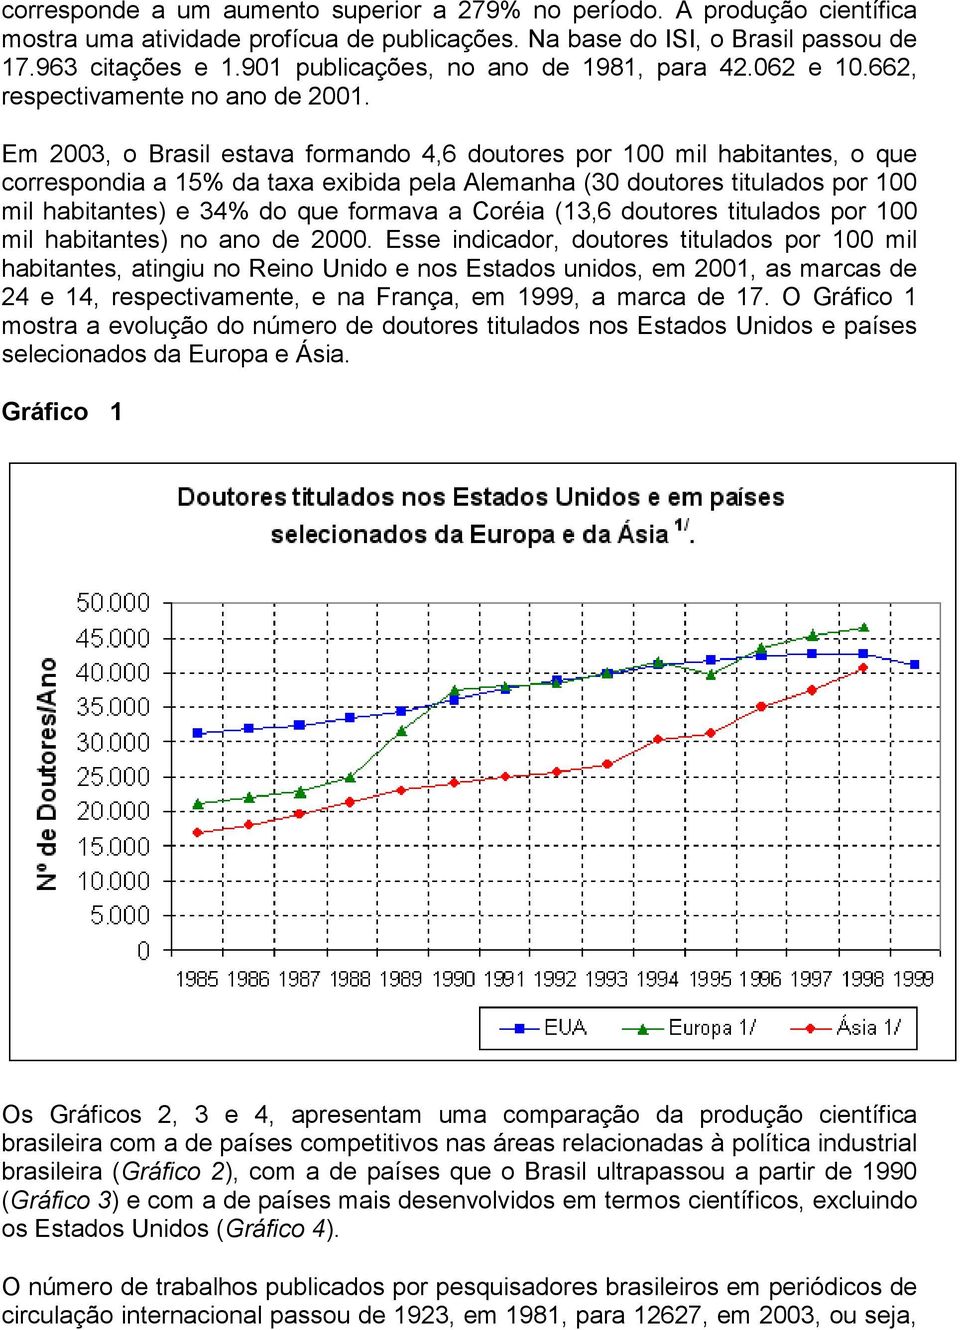 Em 2003, o Brasil estava formando 4,6 doutores por 100 mil habitantes, o que correspondia a 15% da taxa exibida pela Alemanha (30 doutores titulados por 100 mil habitantes) e 34% do que formava a